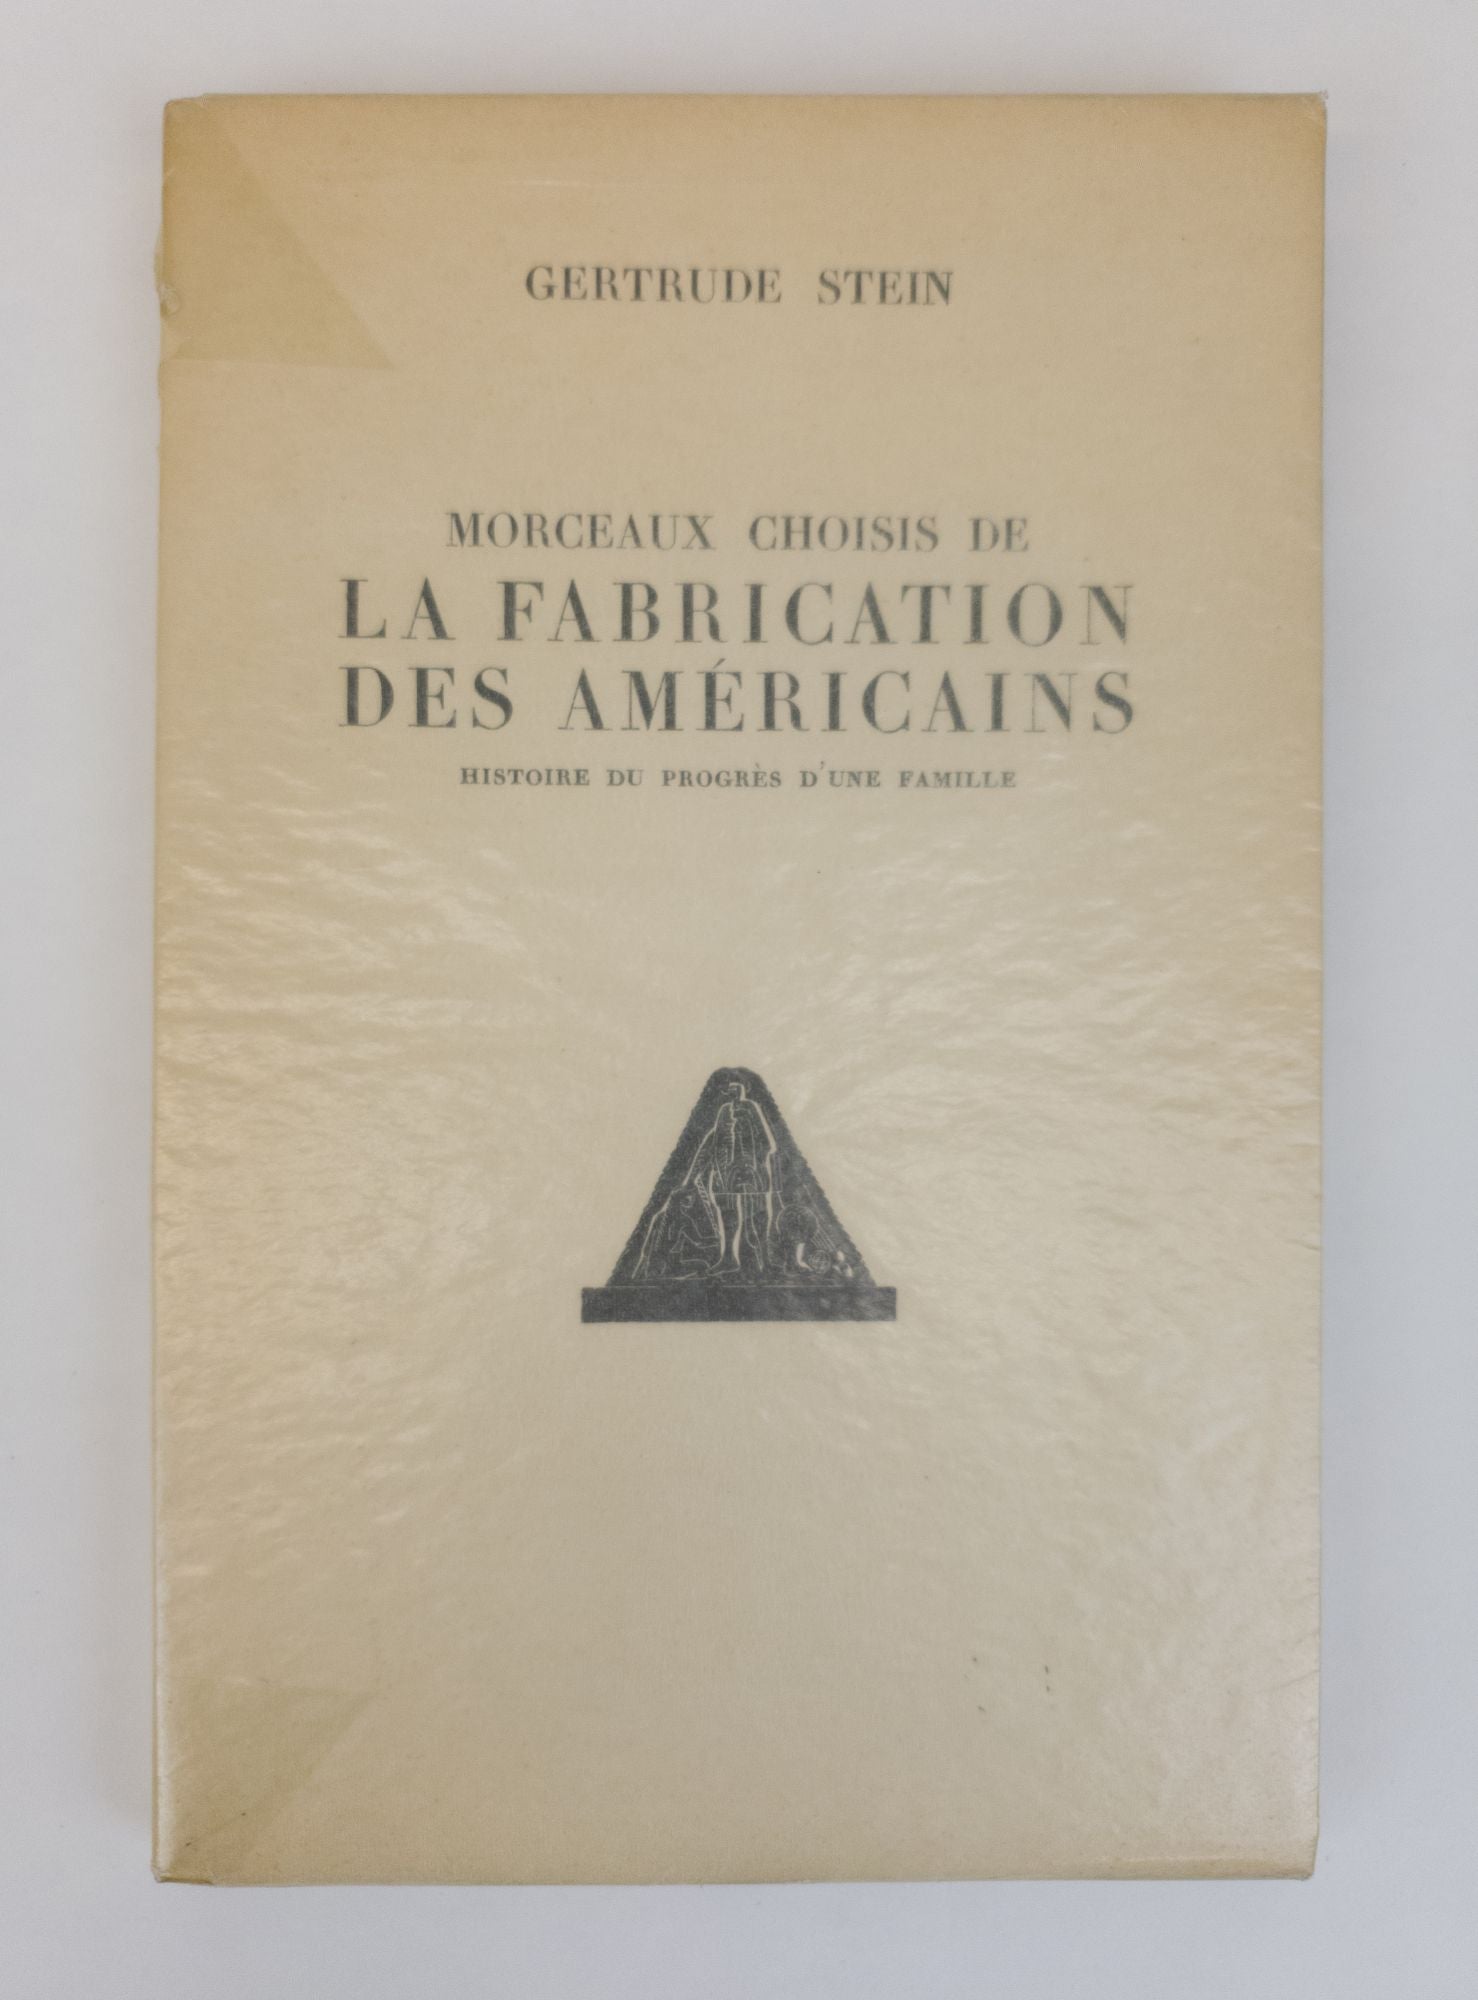 Product Image for MORCEAUX CHOISIS DE LA FABRICATION DES AMERICAINS. HISTOIRE DU PROGRÈS D'UNE FAMILLE [Signed]